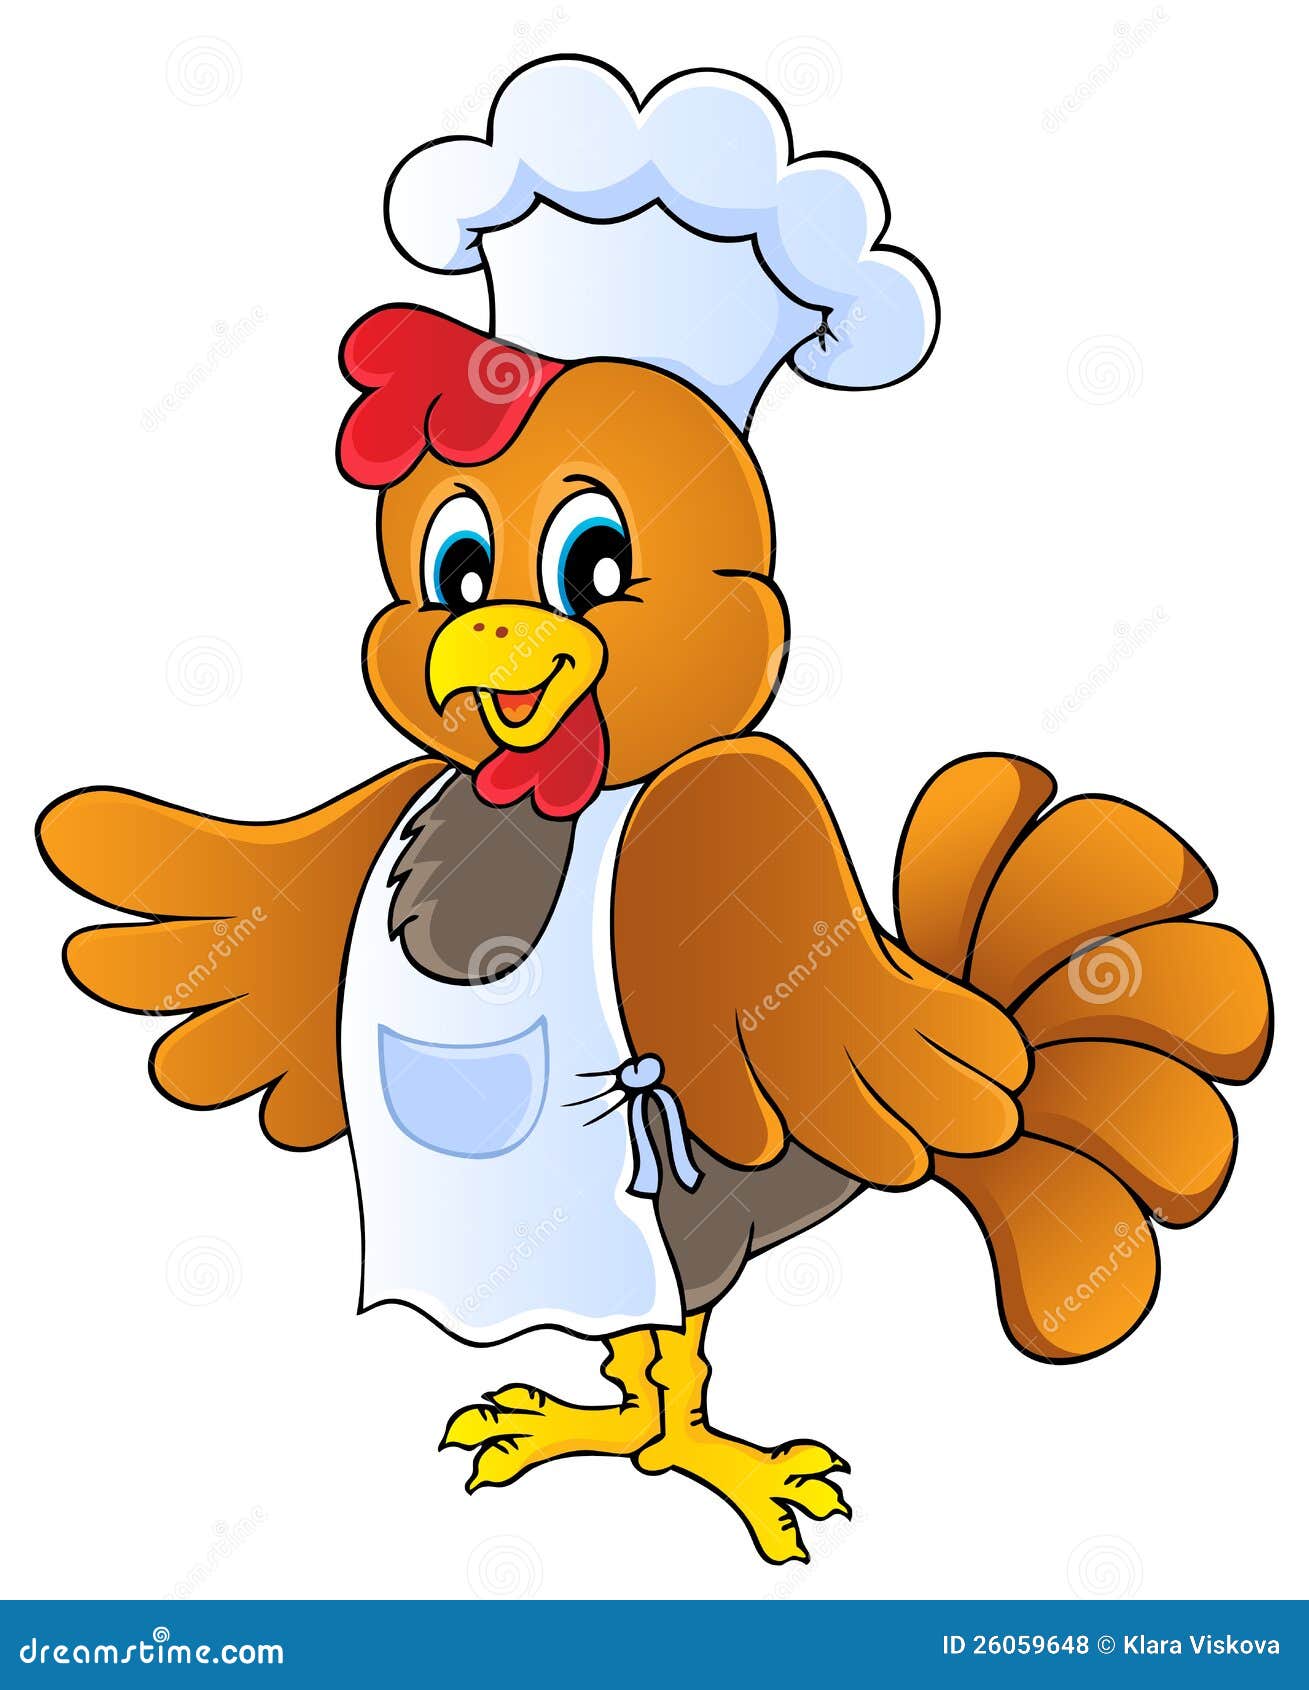 chicken chef clipart - photo #9